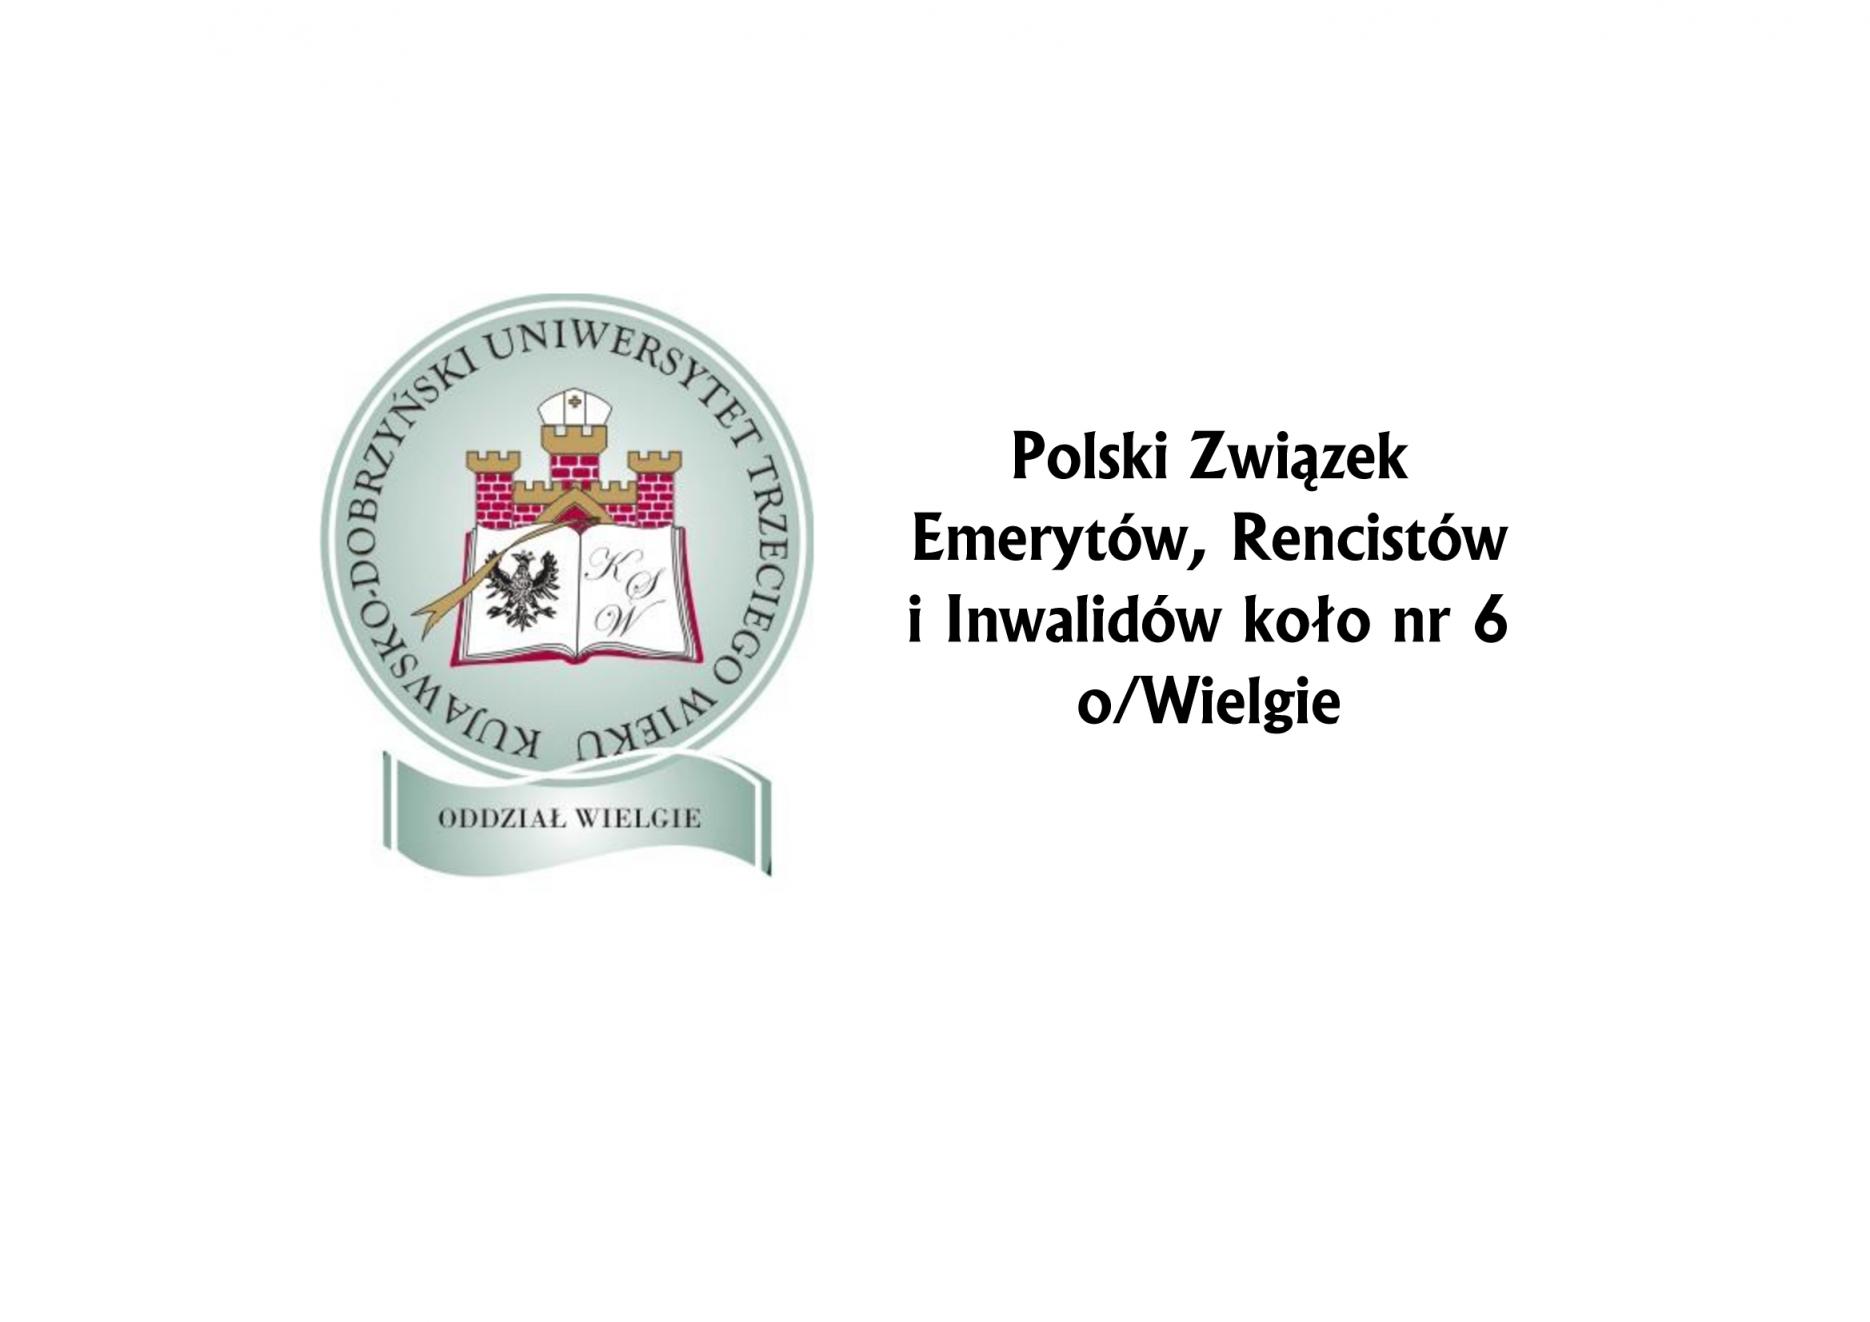 Kujawsko-Dobrzyński Uniwersytet Trzeciego Wieku o/ Wielgie